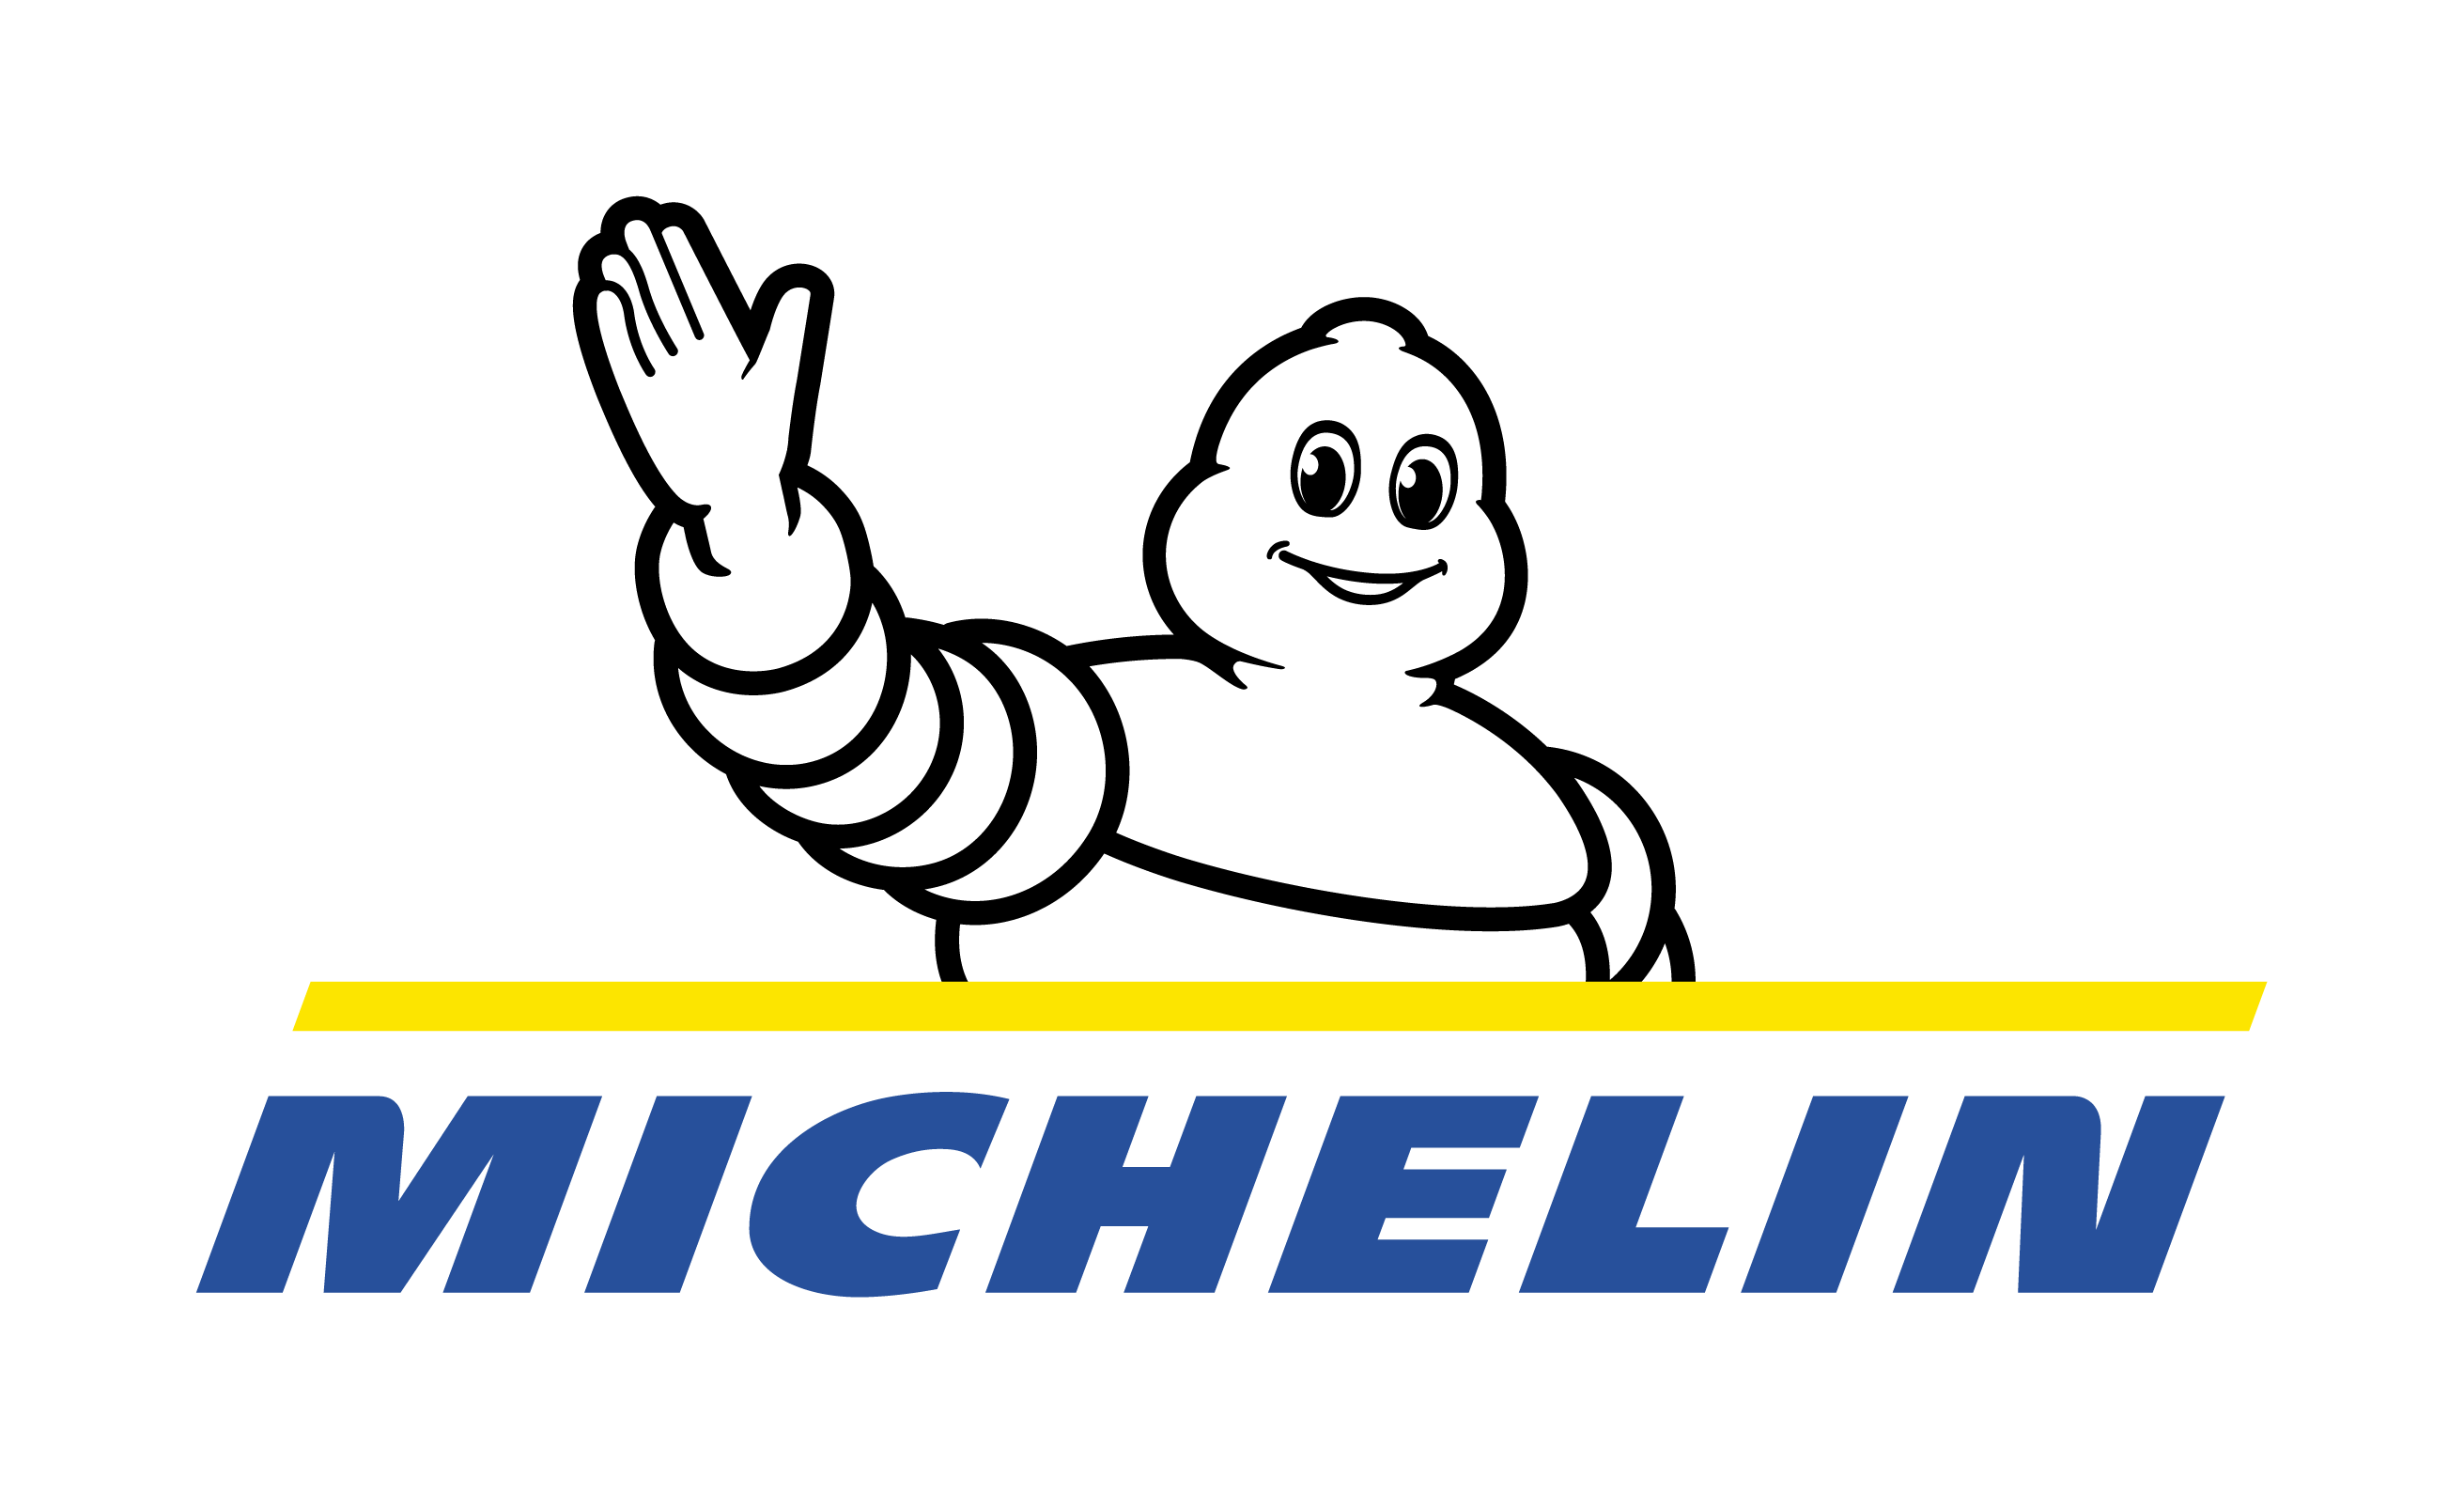 MICHELIN Motorsport